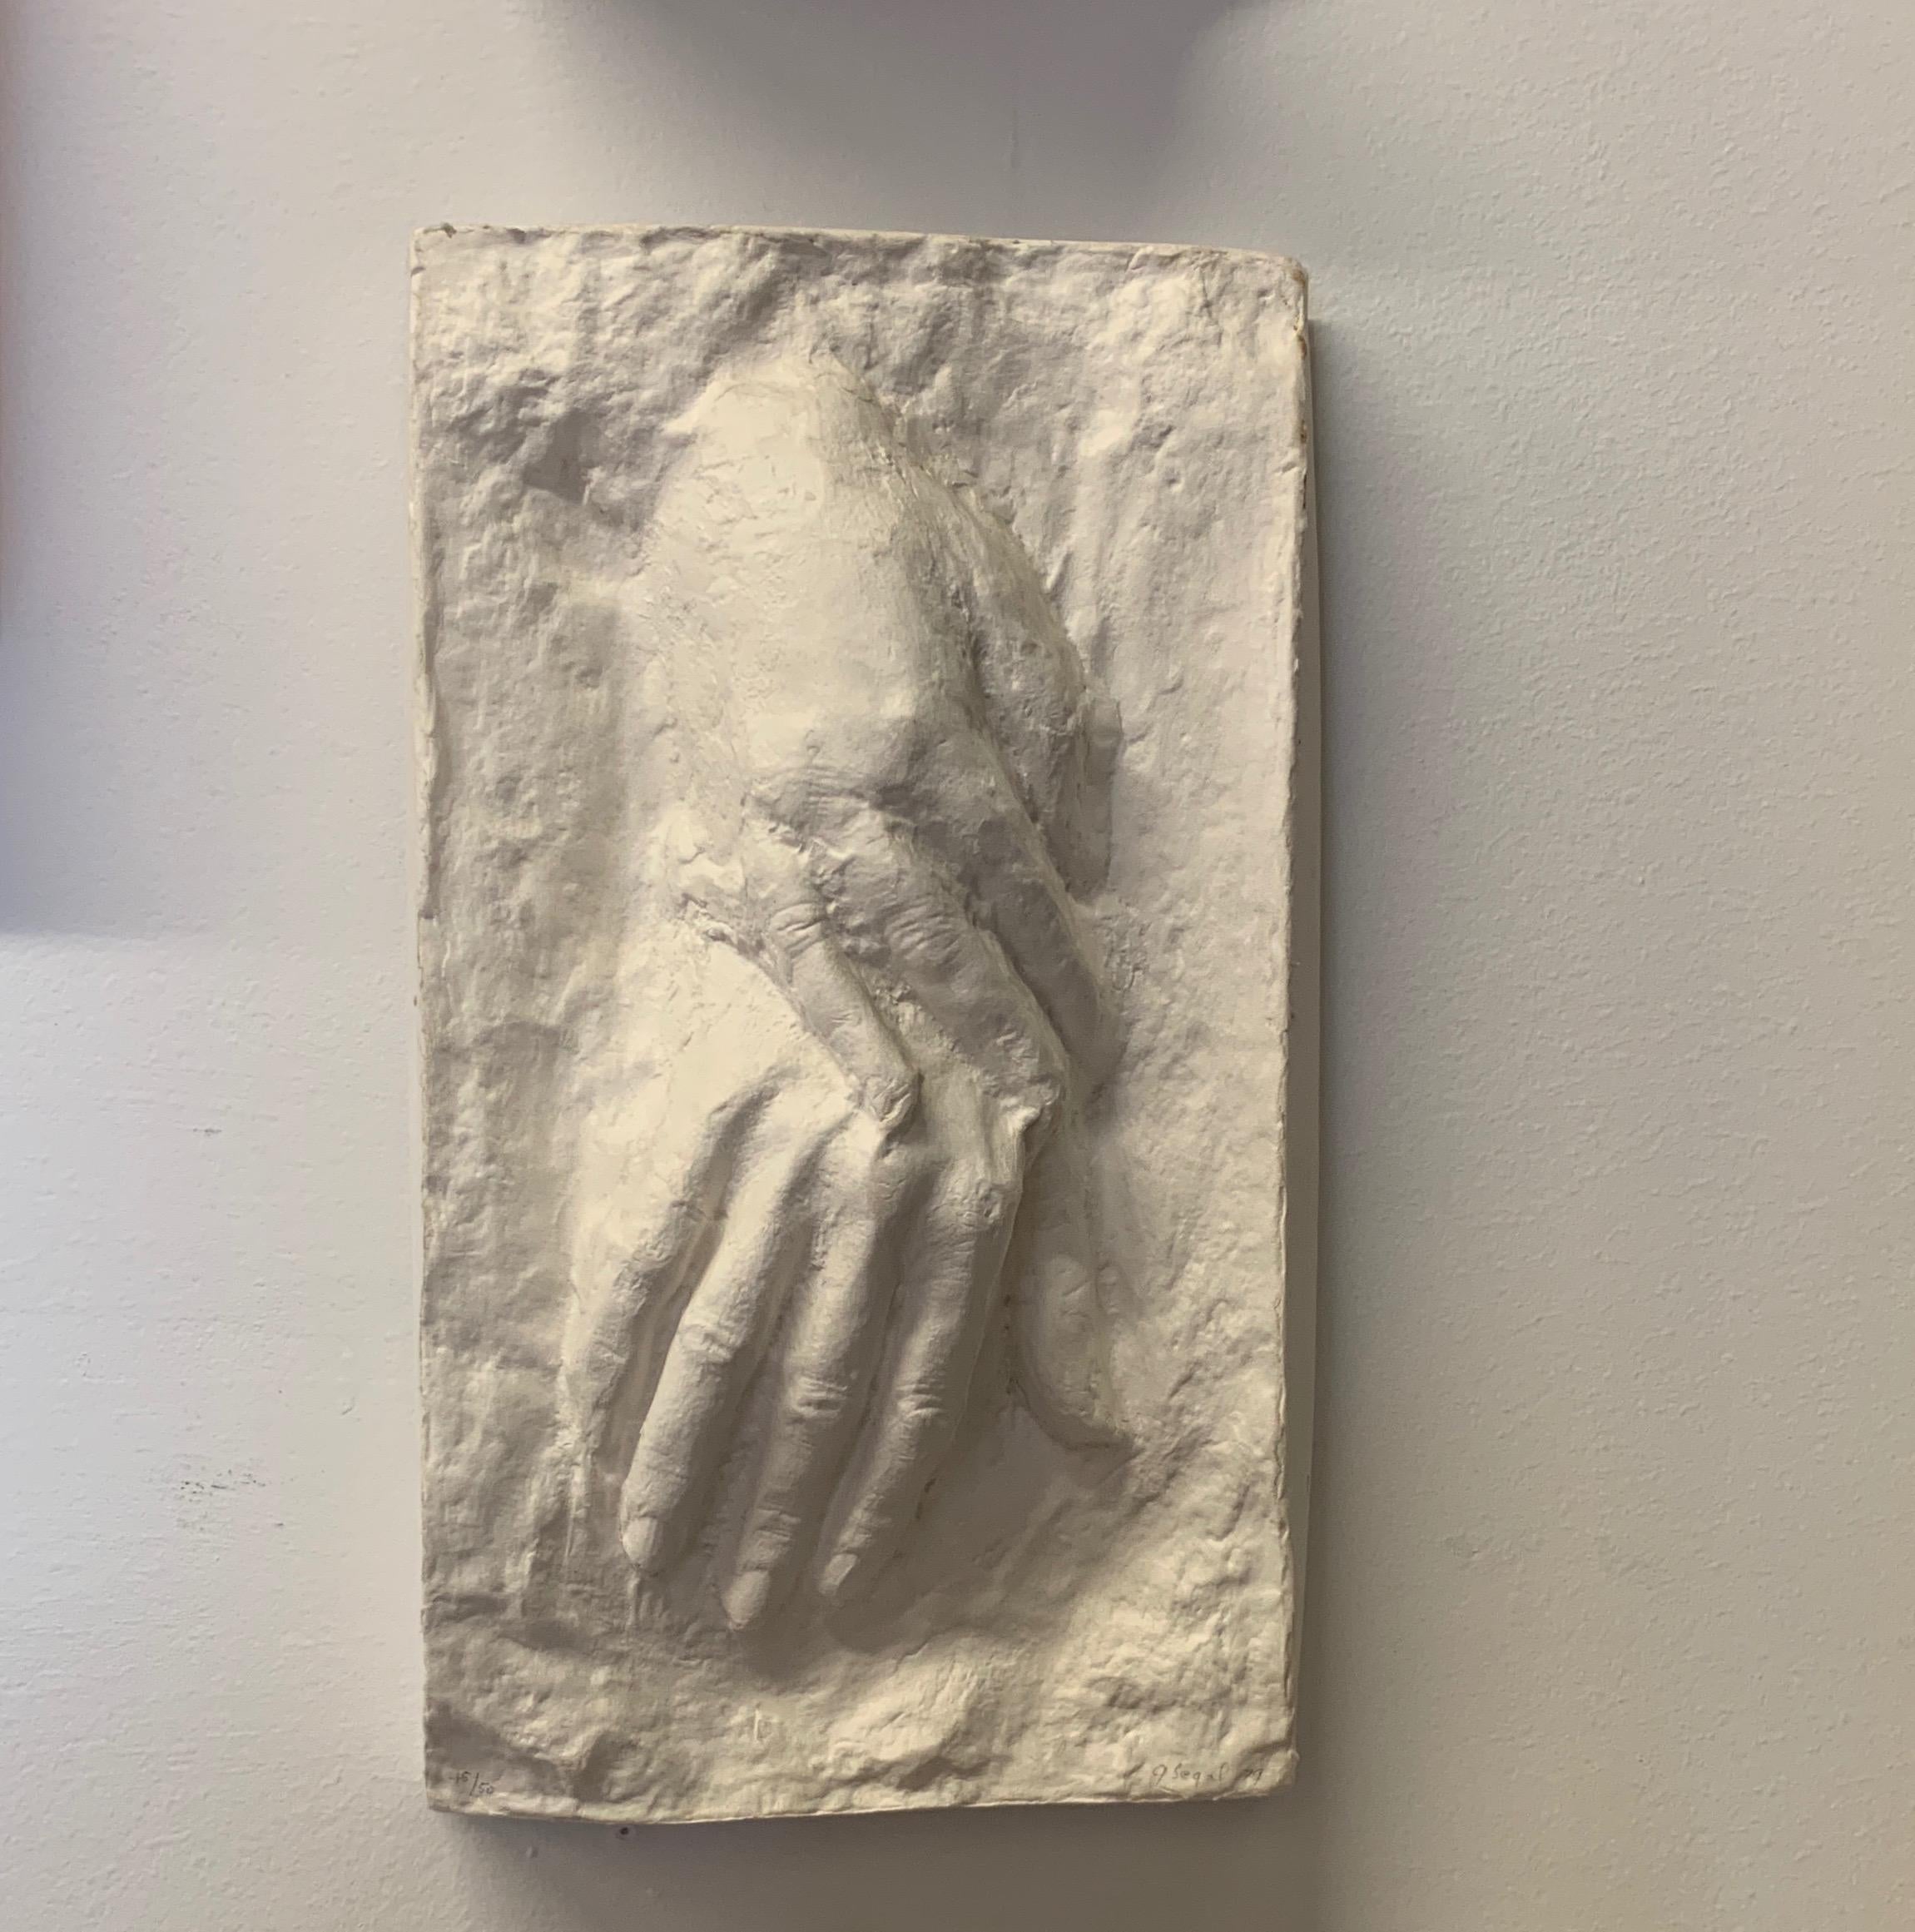 George Segal Figurative Sculpture - TWO HANDS I